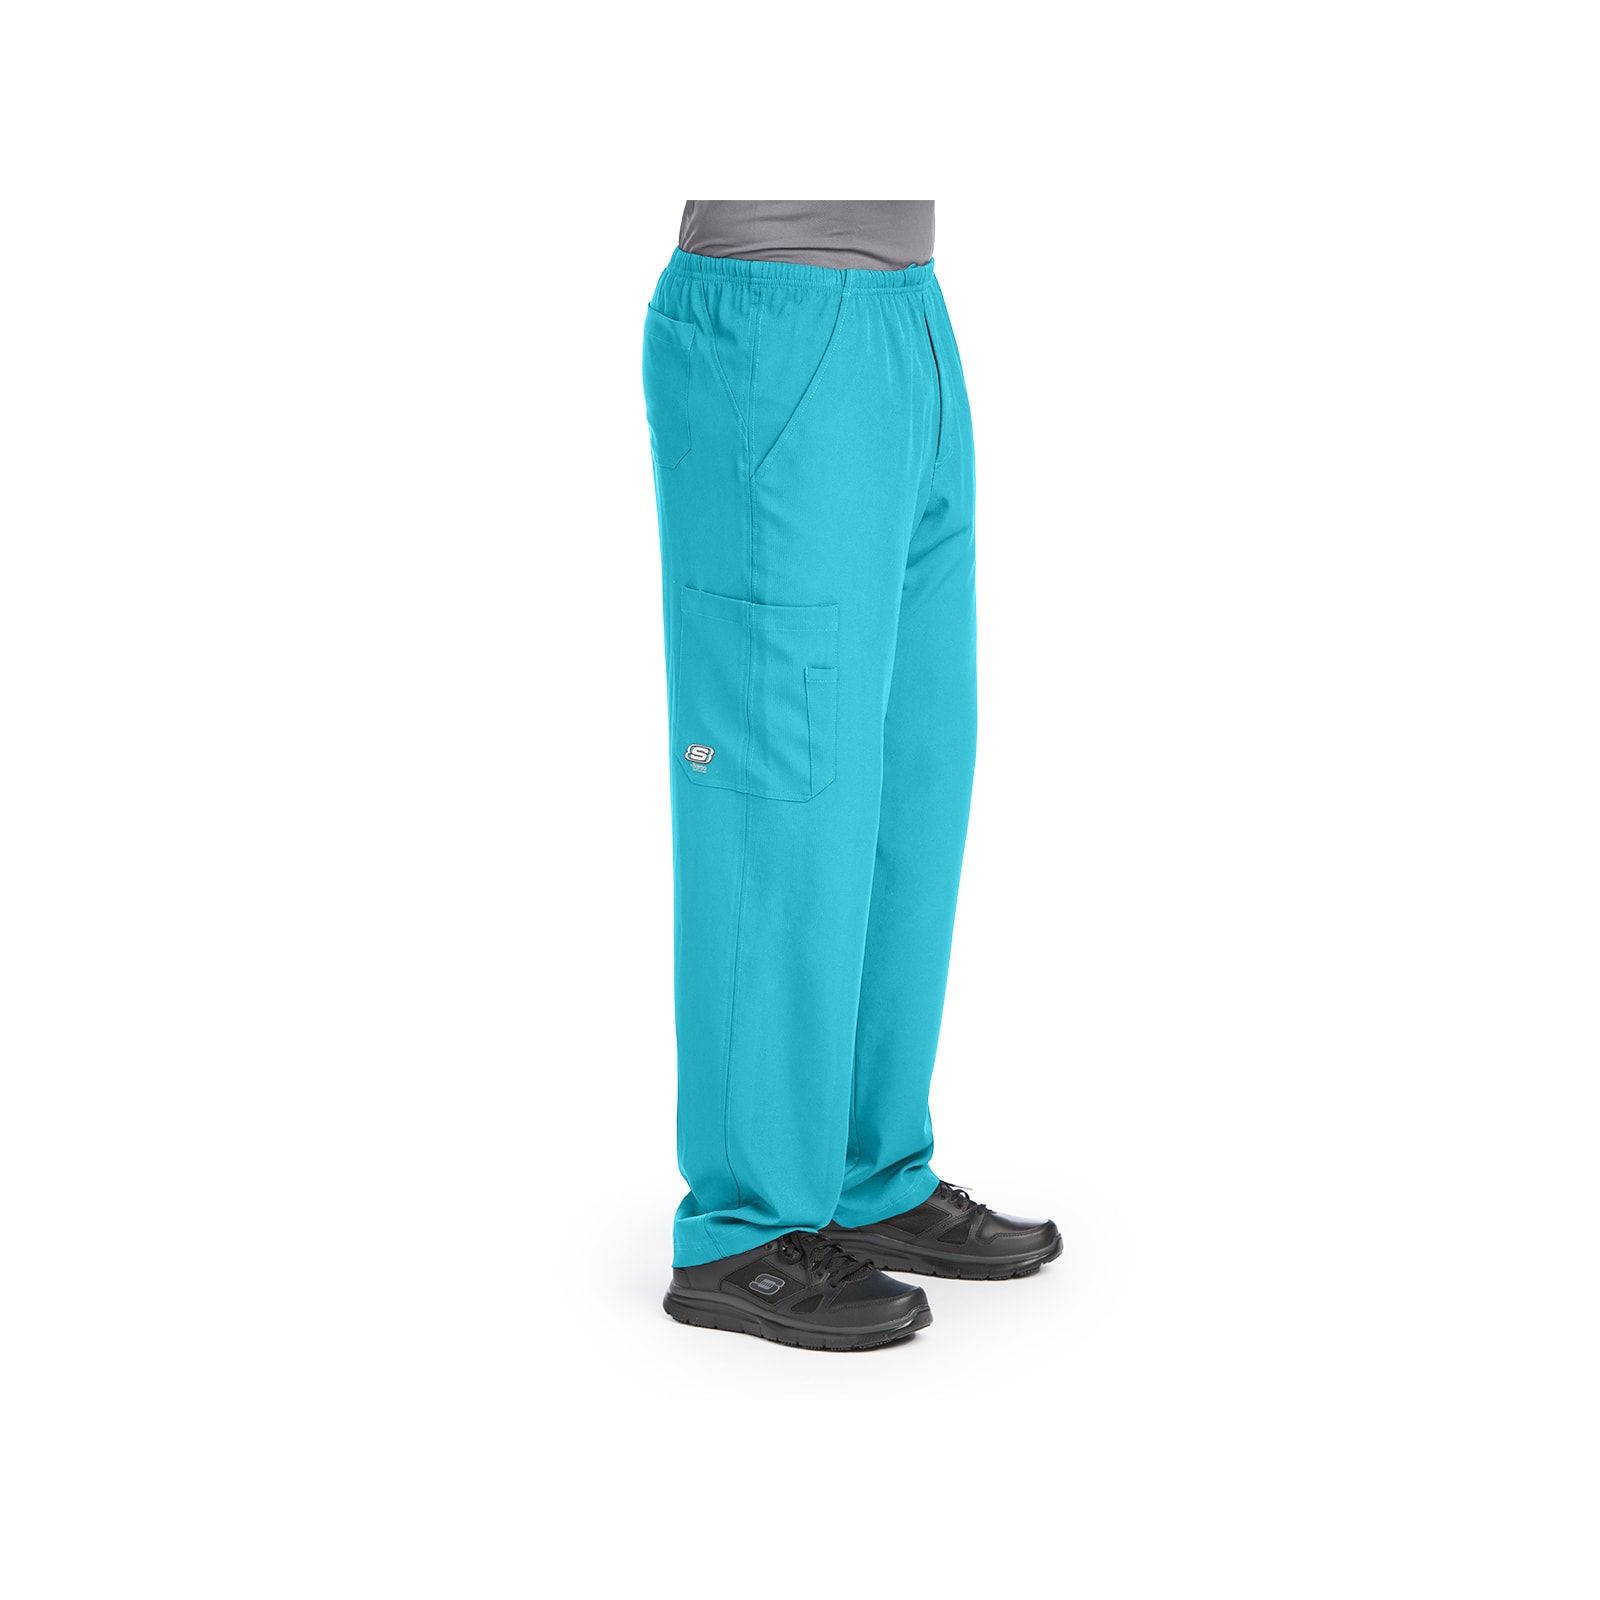 Pantalon médical homme, couleur turquoise vue de côté, collection "Skechers" (SK0215-)